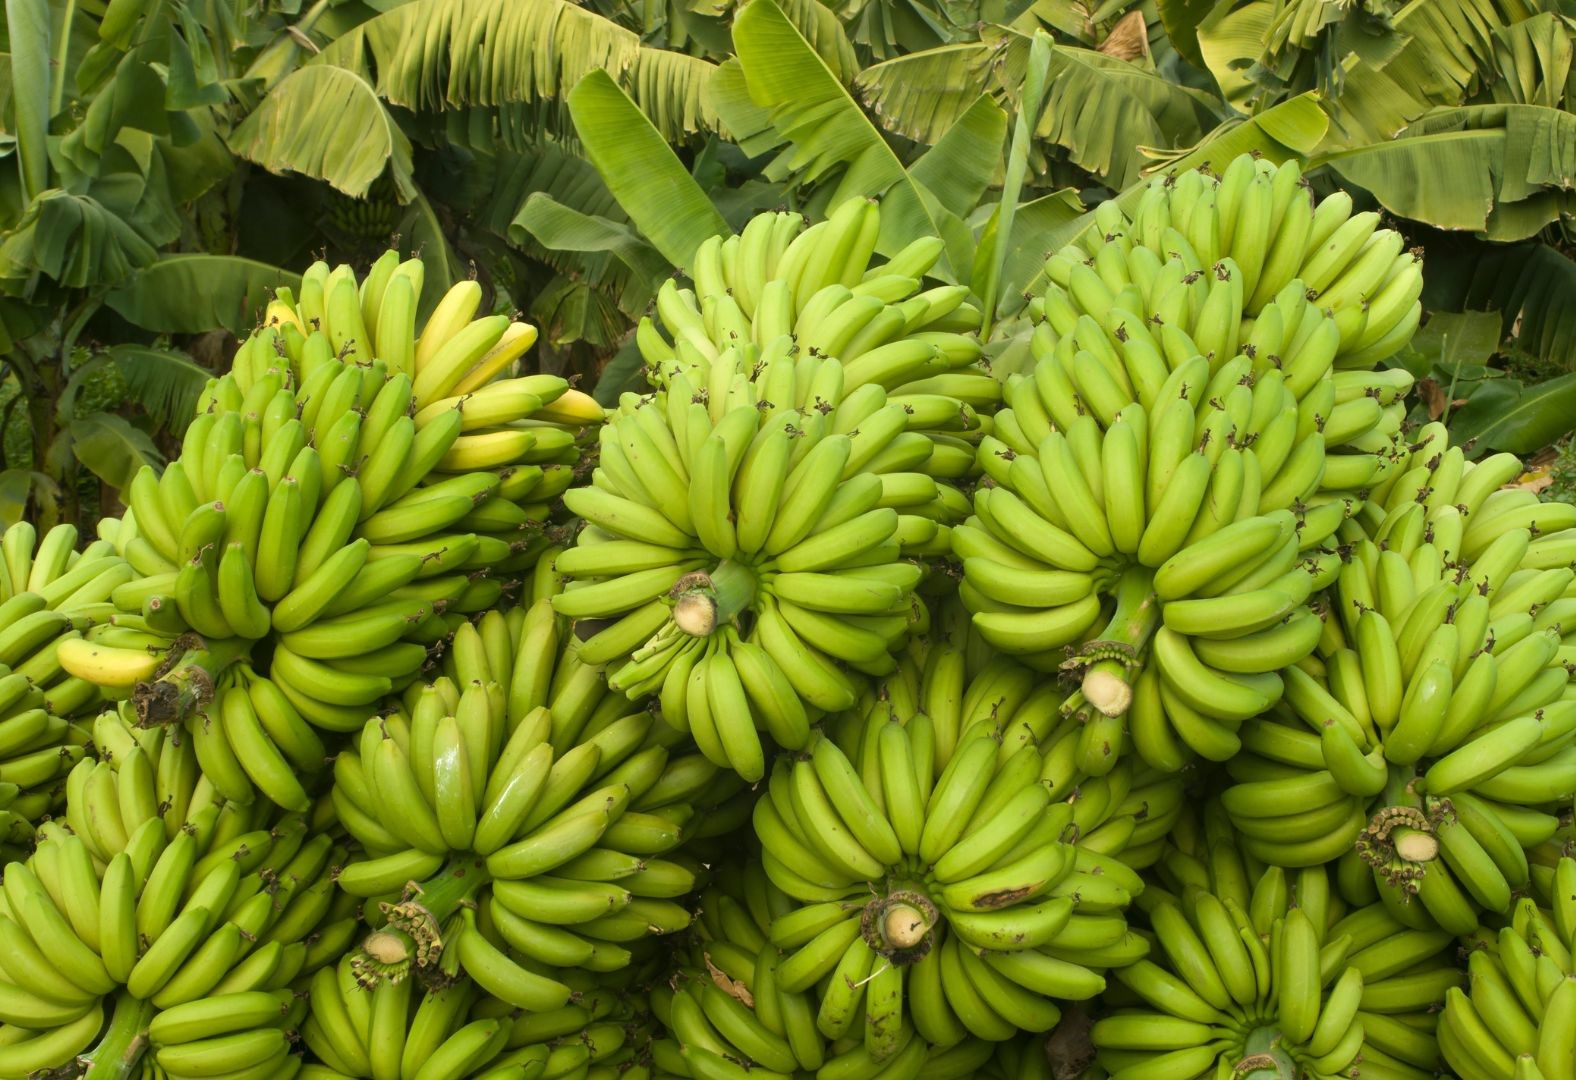 https://cdn.wikifarmer.com/wp-content/uploads/2023/05/La-banane-Histoire-de-la-culture-valeur-nutritionnelle-et-bienfaits-pour-la-sante.jpg